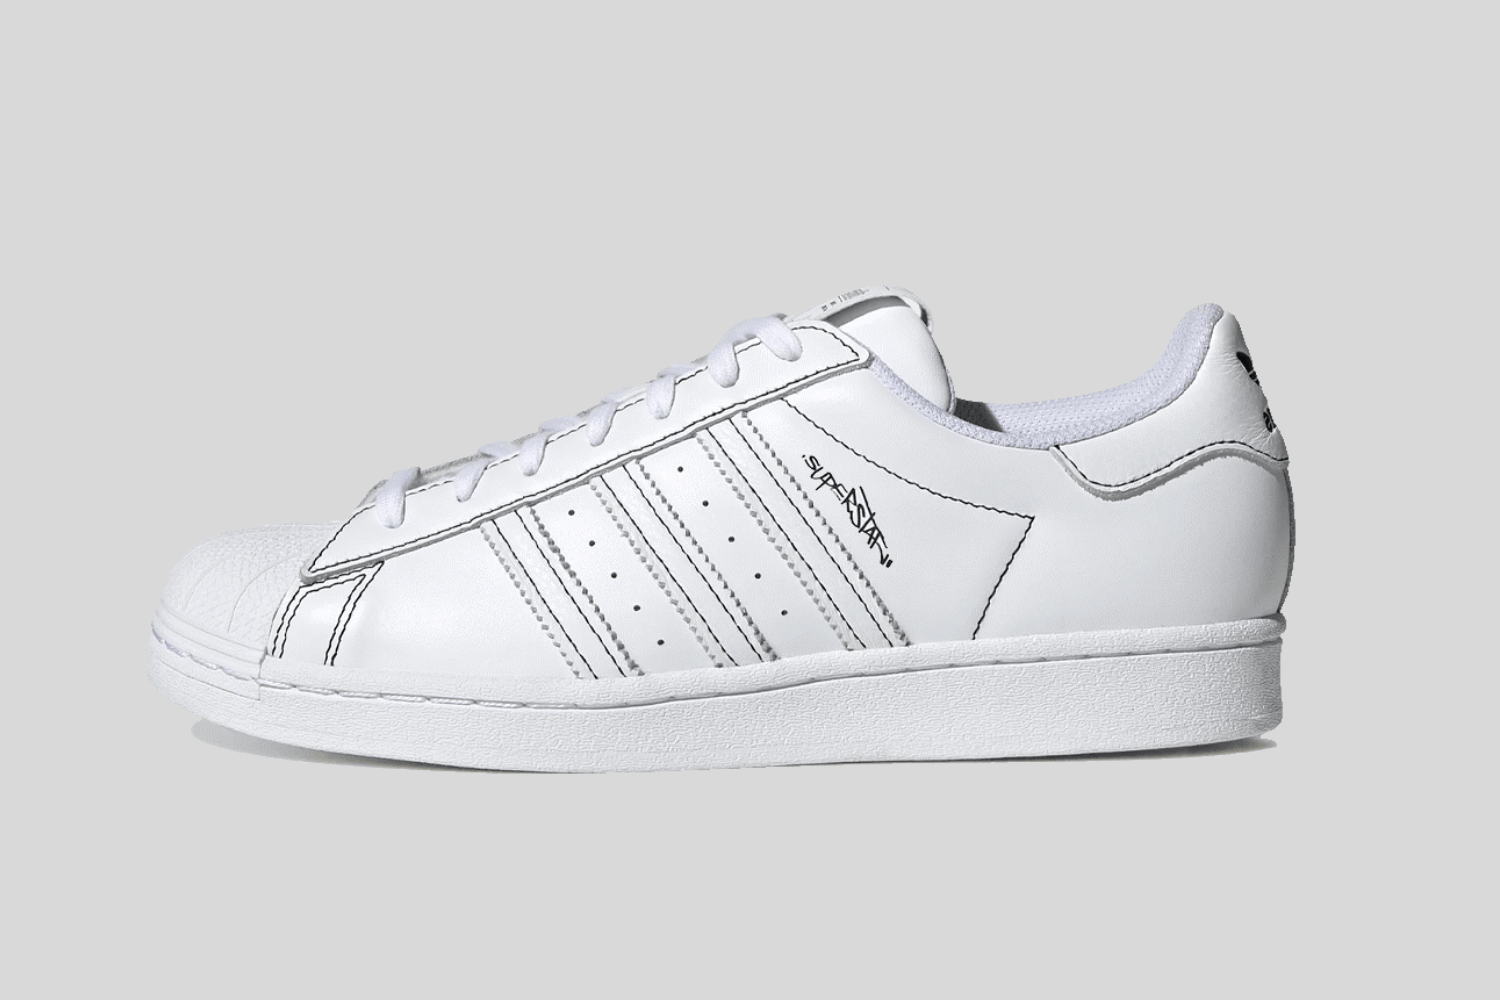 Release Reminder: Sneakerella x adidas Superstar 'White'